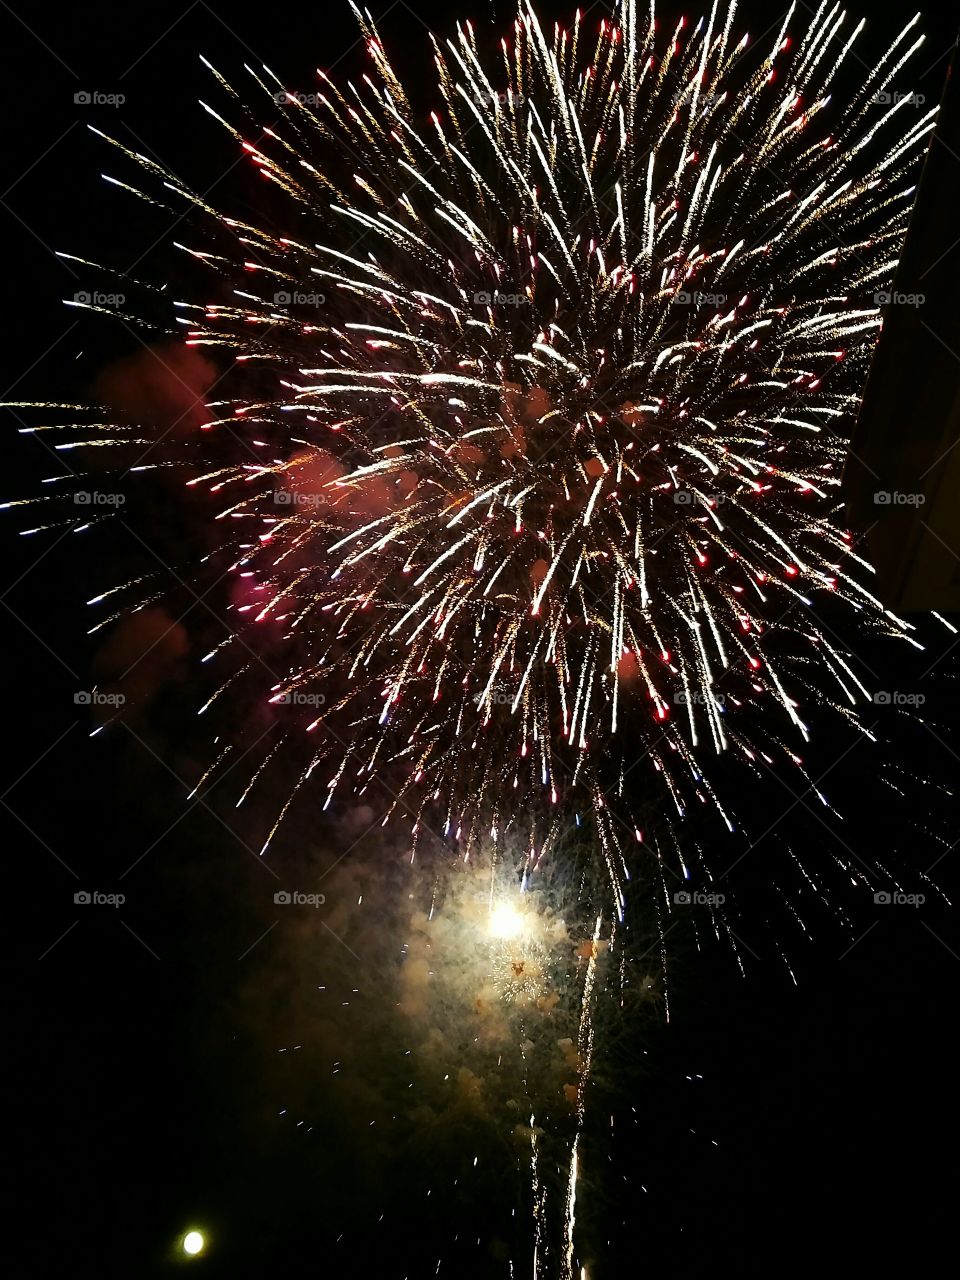 Beach Pier Fireworks Show, SC, USA